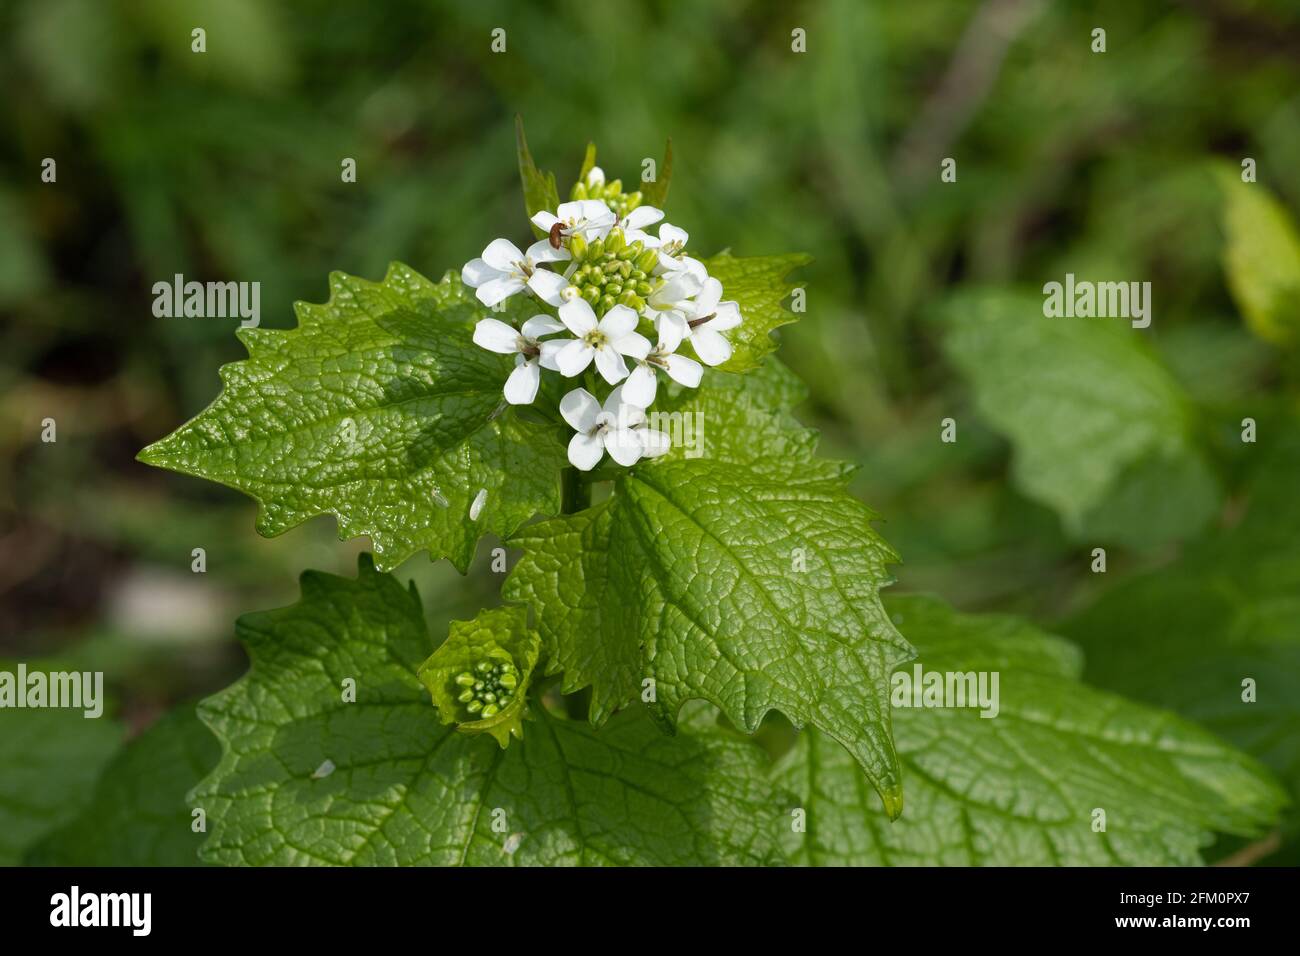 Knoblauchsenf (Alliaria petiolata), blühende Pflanze aus der Familie der Brassicaceae, Mai, Großbritannien Stockfoto